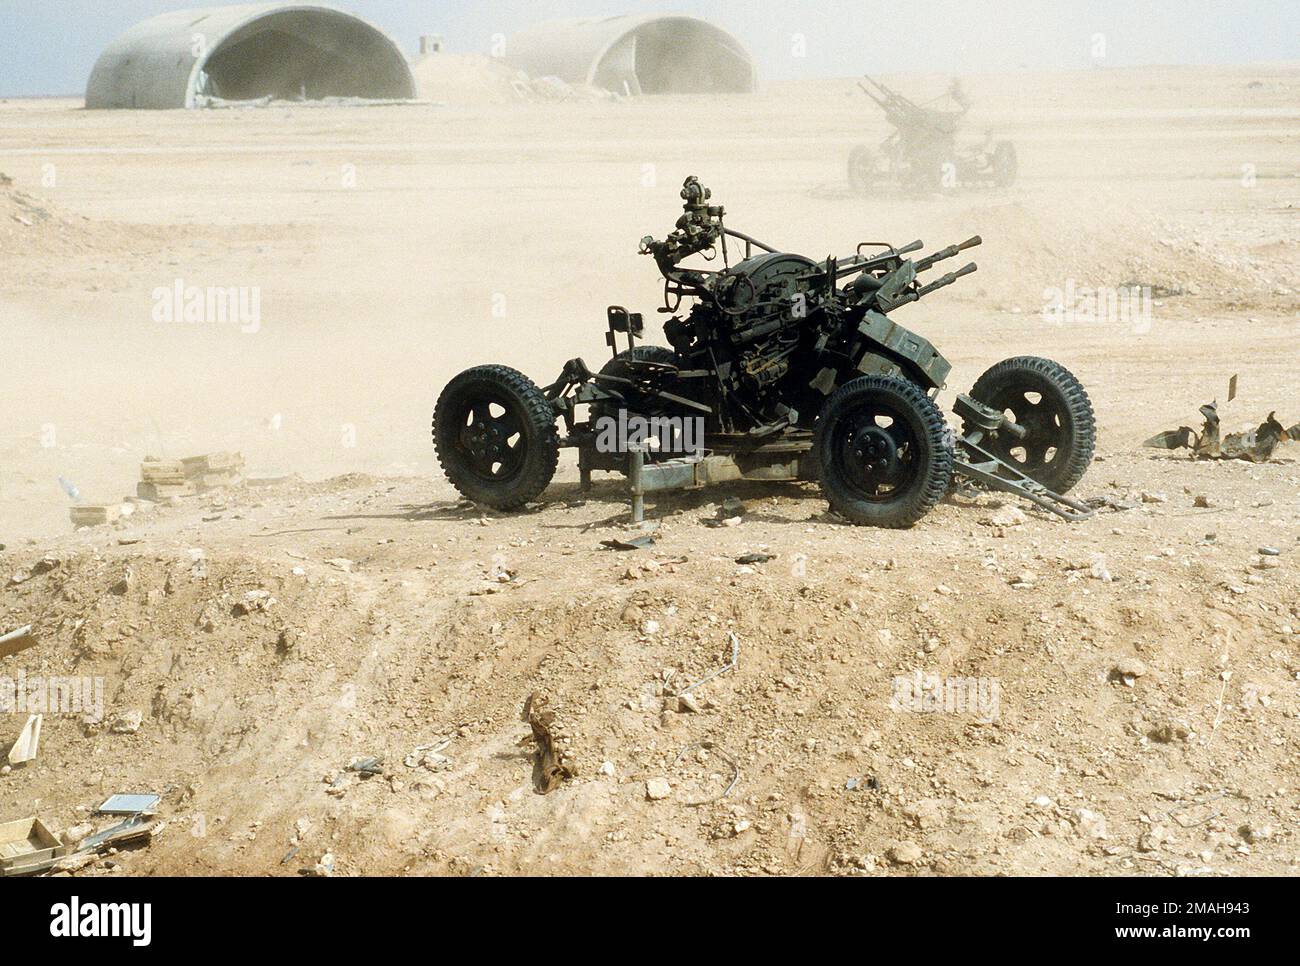 Une arme anti-aérienne ZPU-4 14,5mm de fabrication soviétique est  abandonnée à la base aérienne d'Al-Salman à la suite de l'opération tempête  du désert. Objet opération/série: BASE DE TEMPÊTE DU DÉSERT: Base aérienne